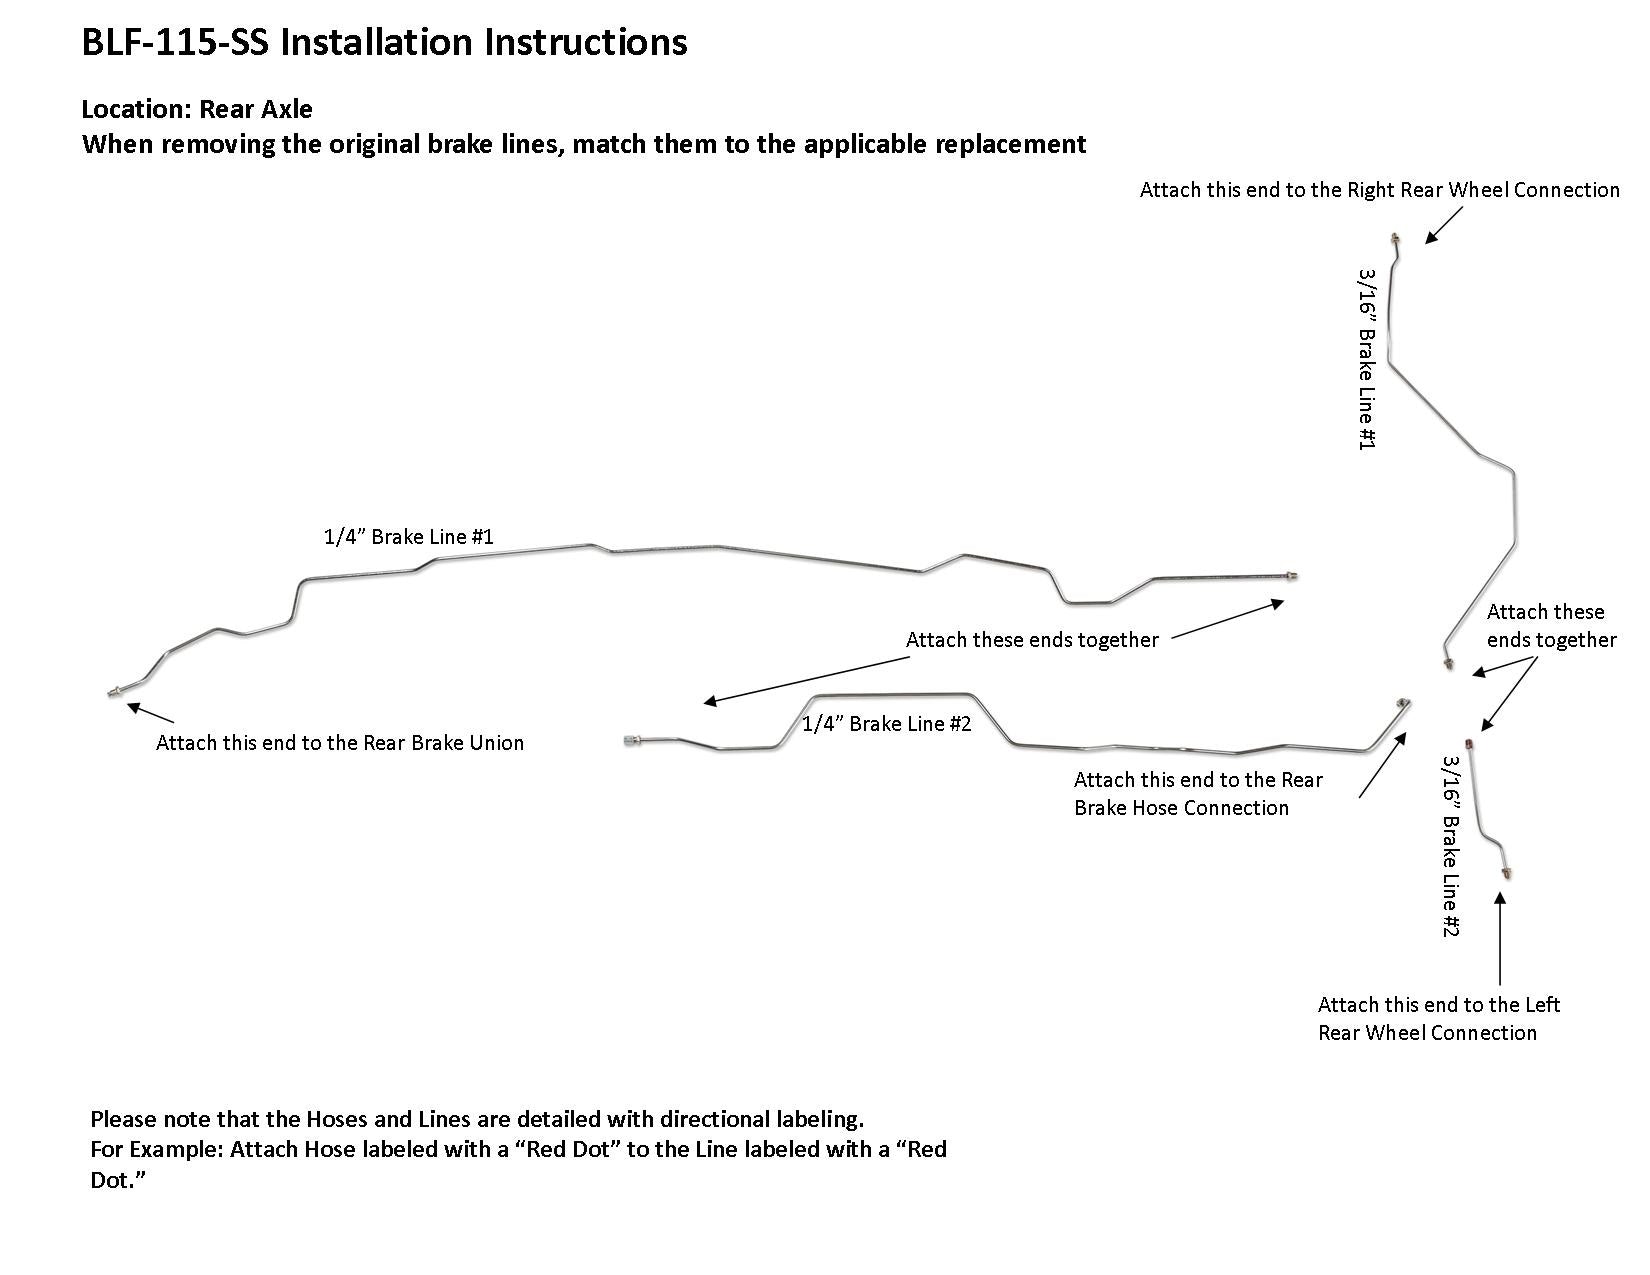 blf-115-ss-installation-instructions.jpg